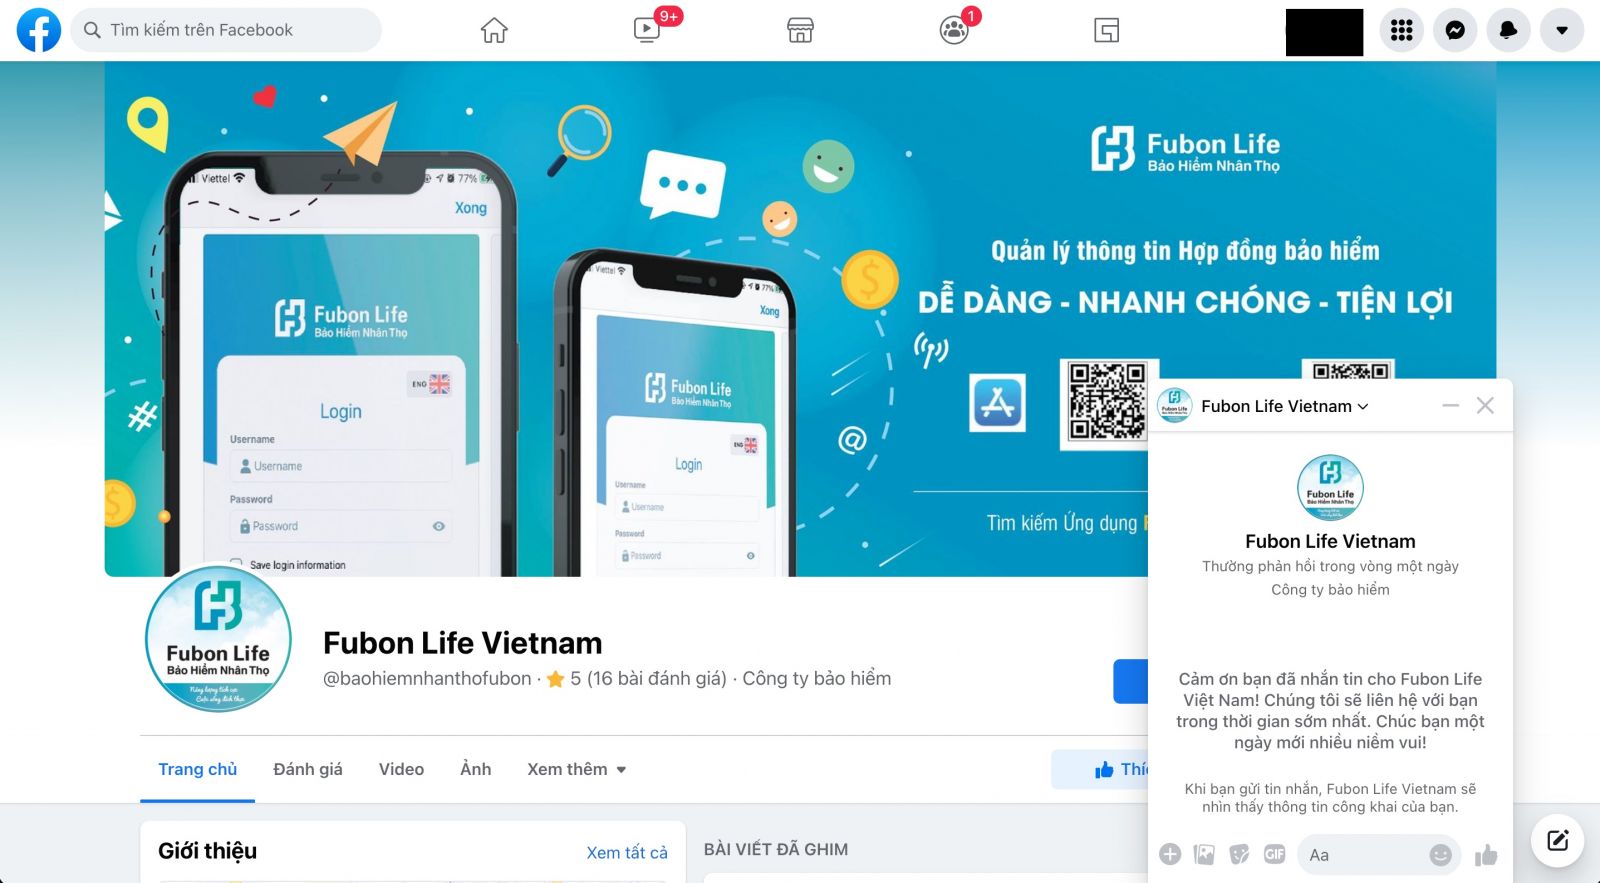 Liên hệ qua live chat với bảo hiểm Fubon Việt Nam